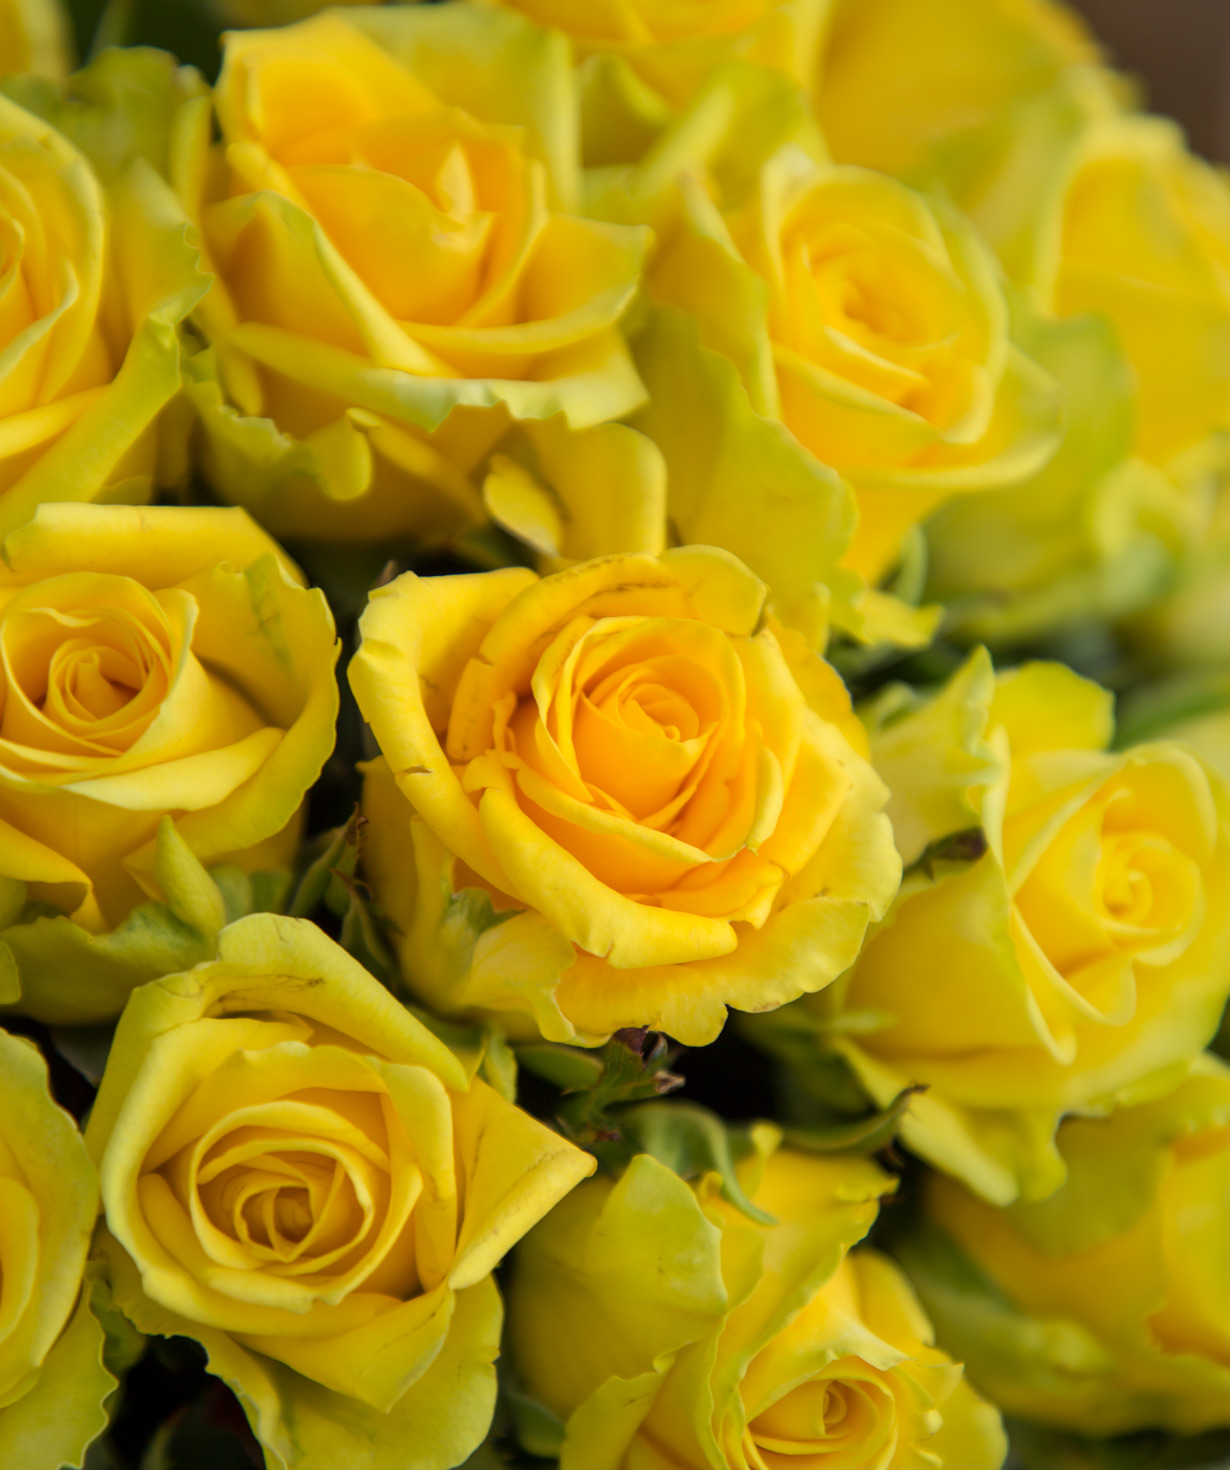 Гюмрийские розы «Penny Lane» желтые 31 шт, 50 см